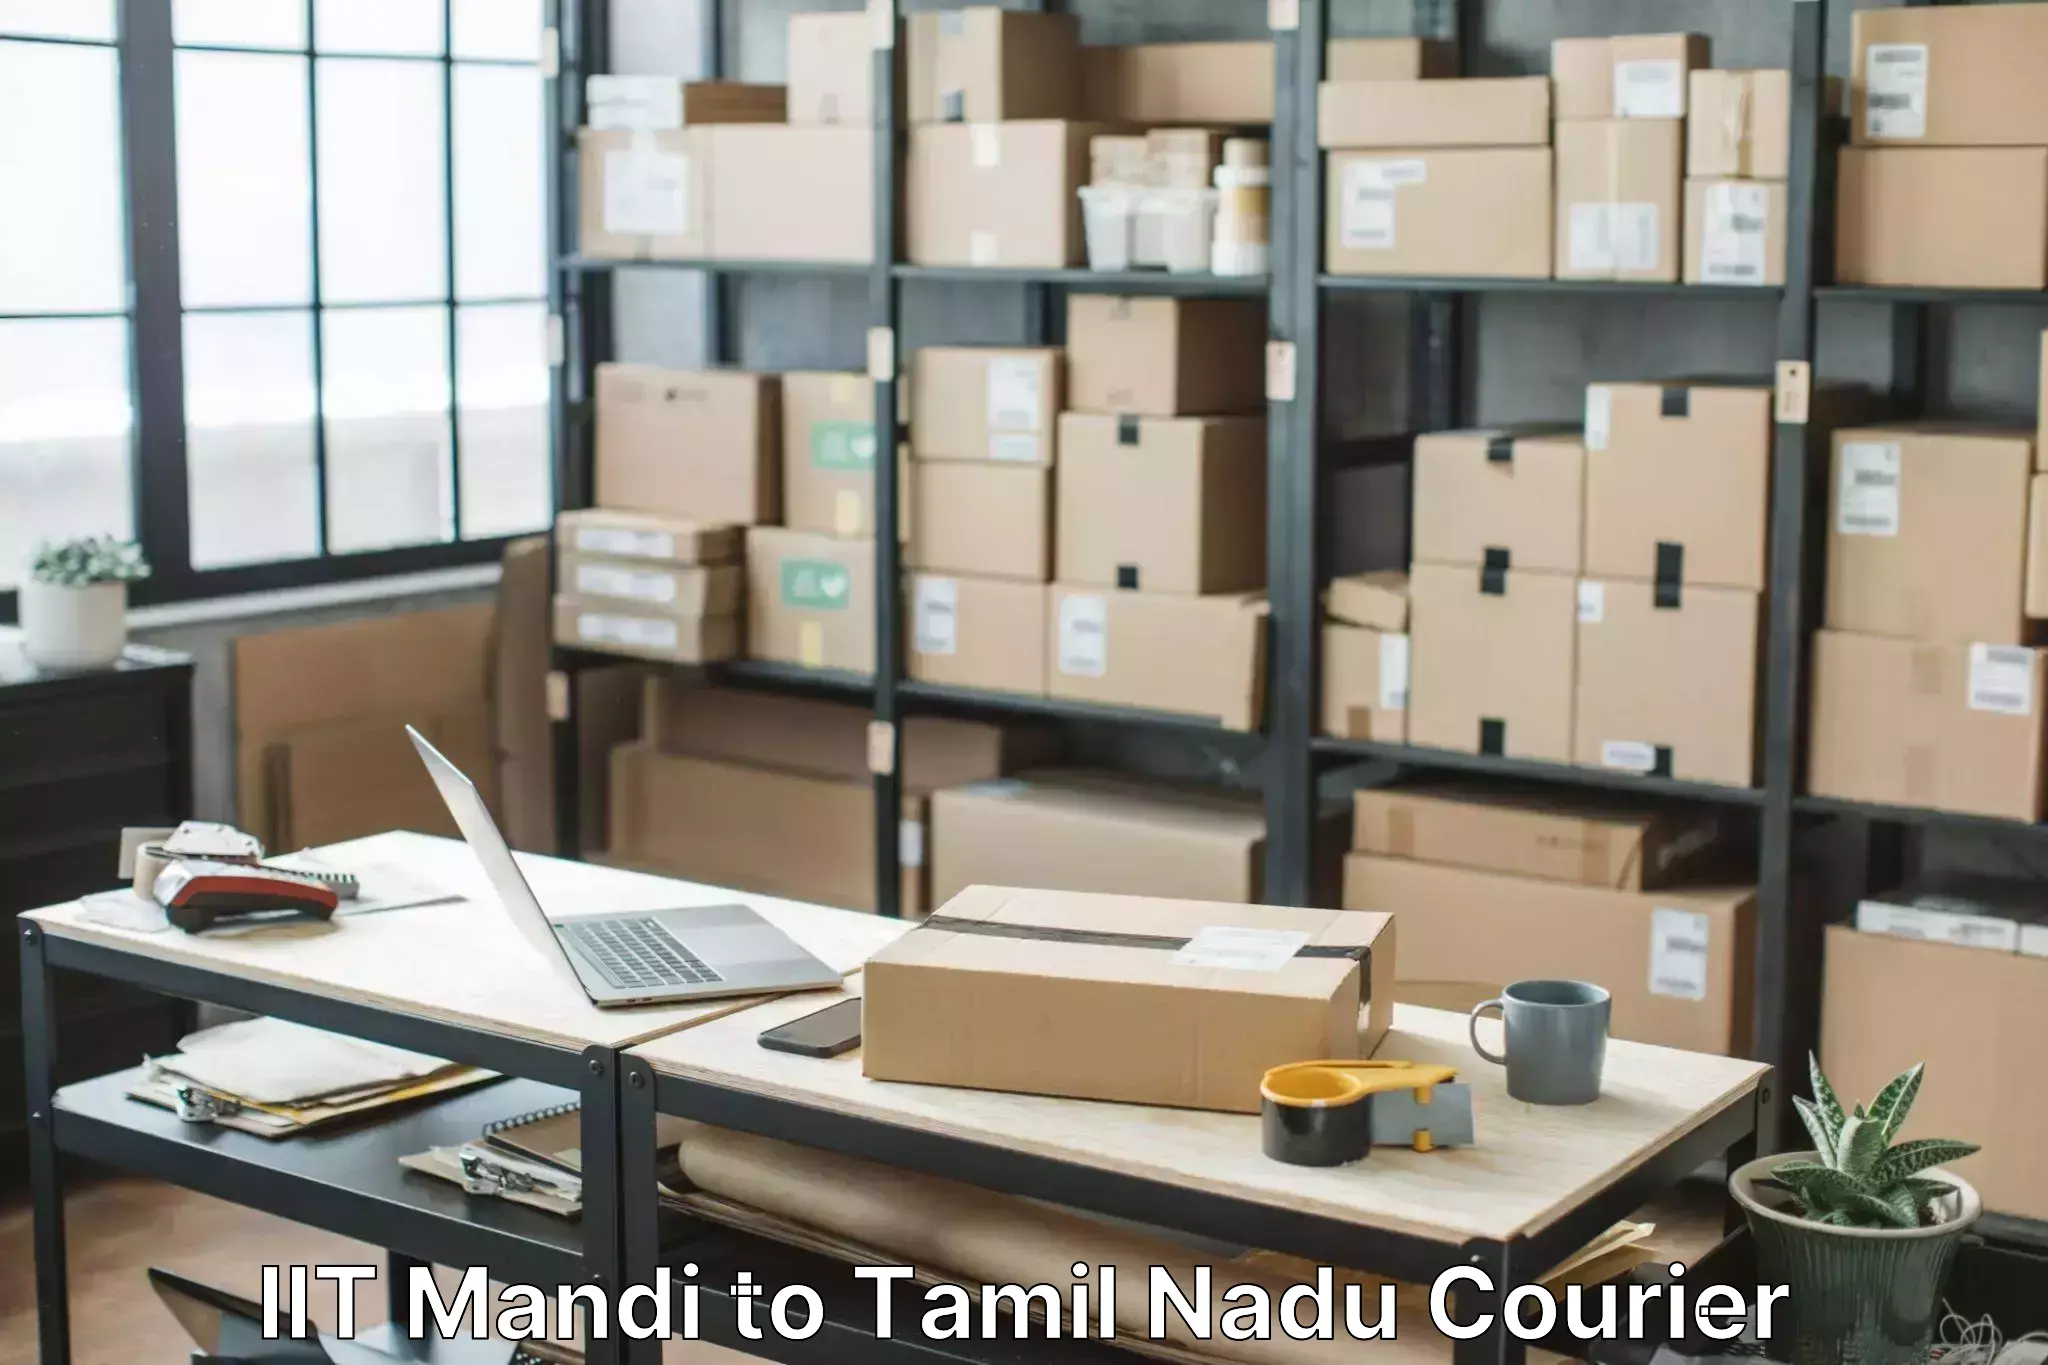 Stress-free household moving IIT Mandi to Tiruvannamalai